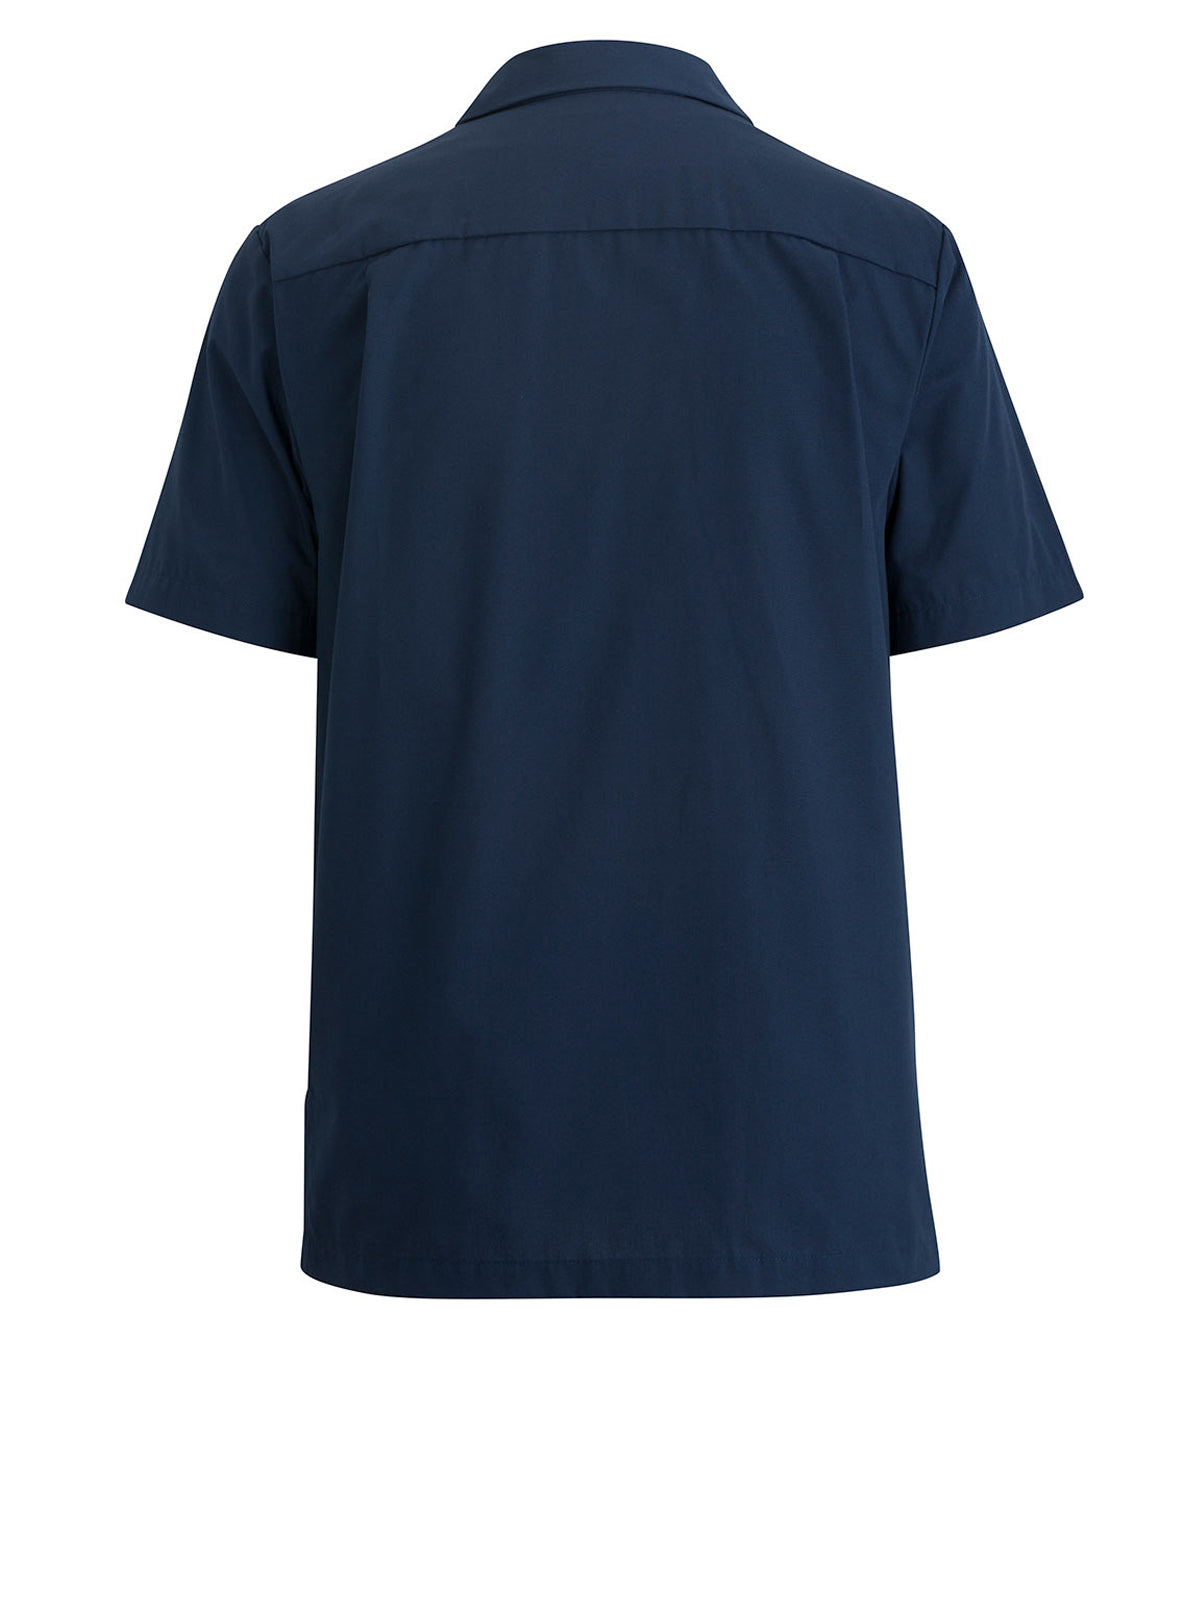 Men's Zip-Front Service Shirt